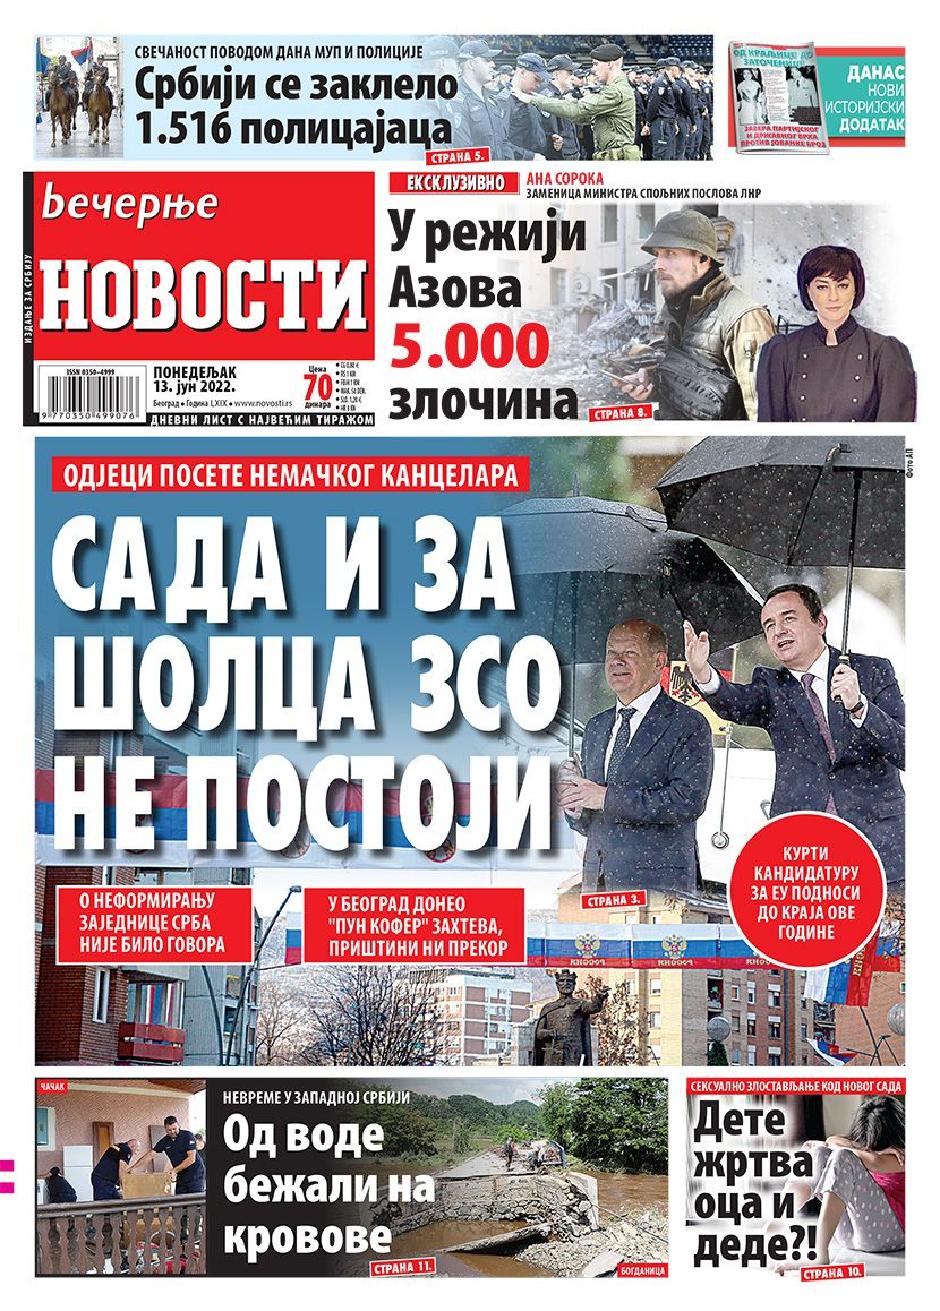 Naslovnice Novosti_1311x940